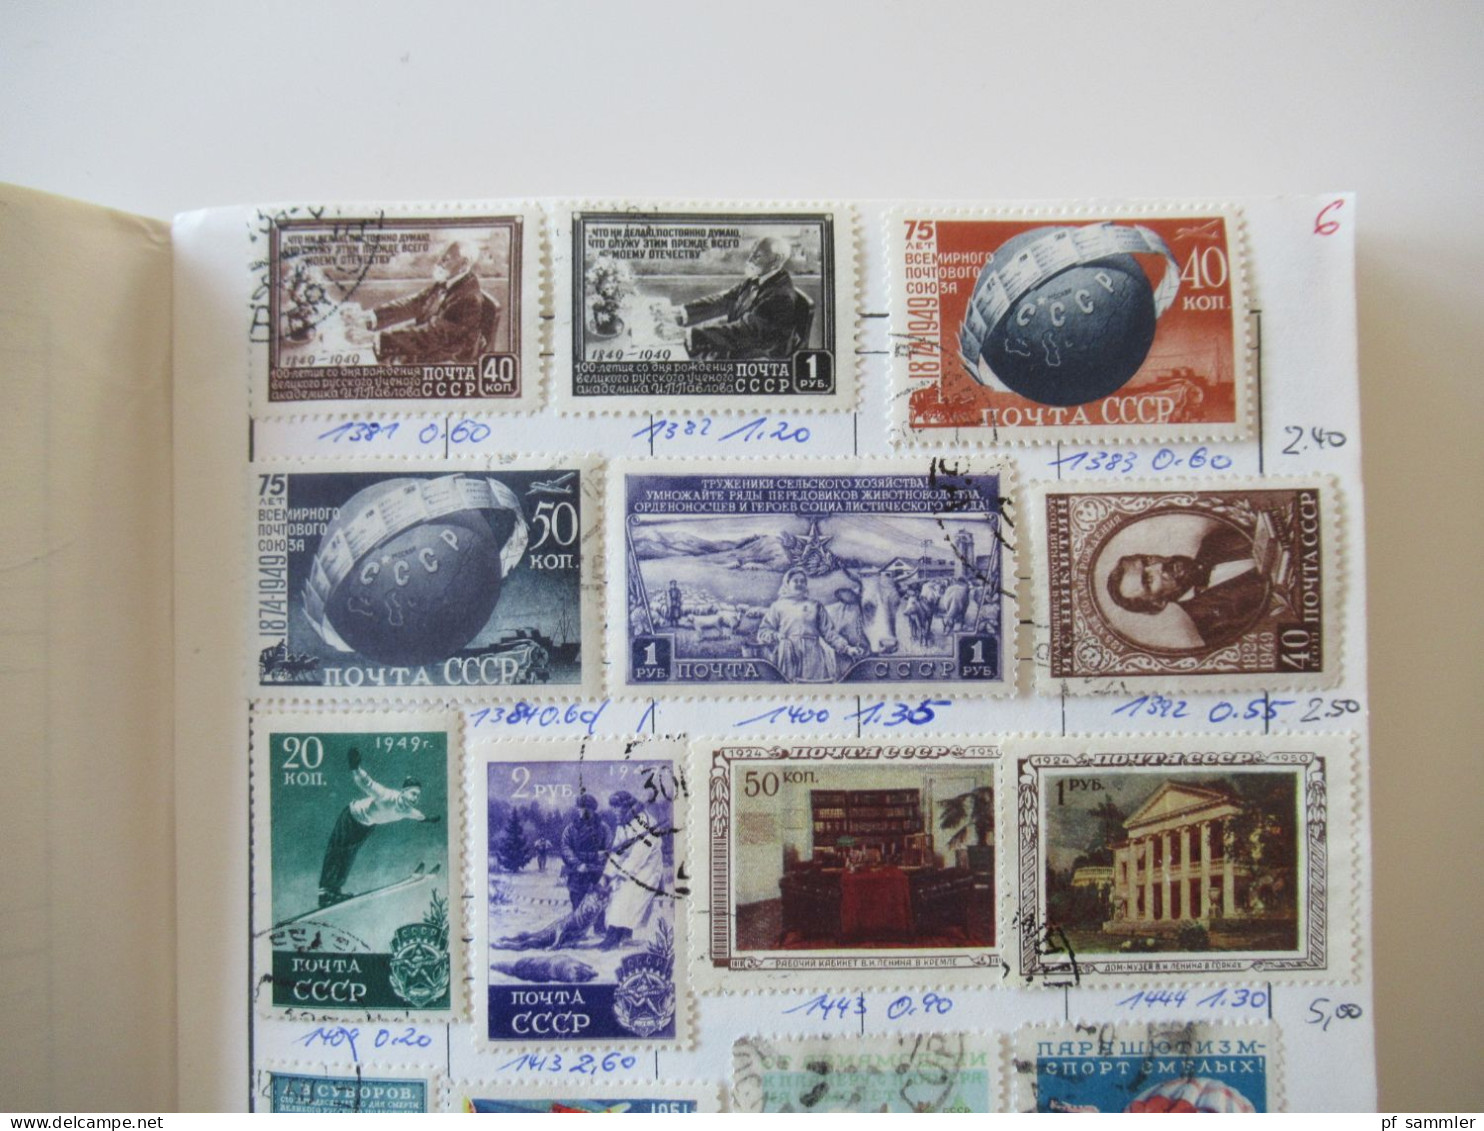 Sammlung / interessante Auswahlhefte Russland UdSSR ab ca. 1900 - 1972 viele gestempelte Marken / Fundgrube!?!